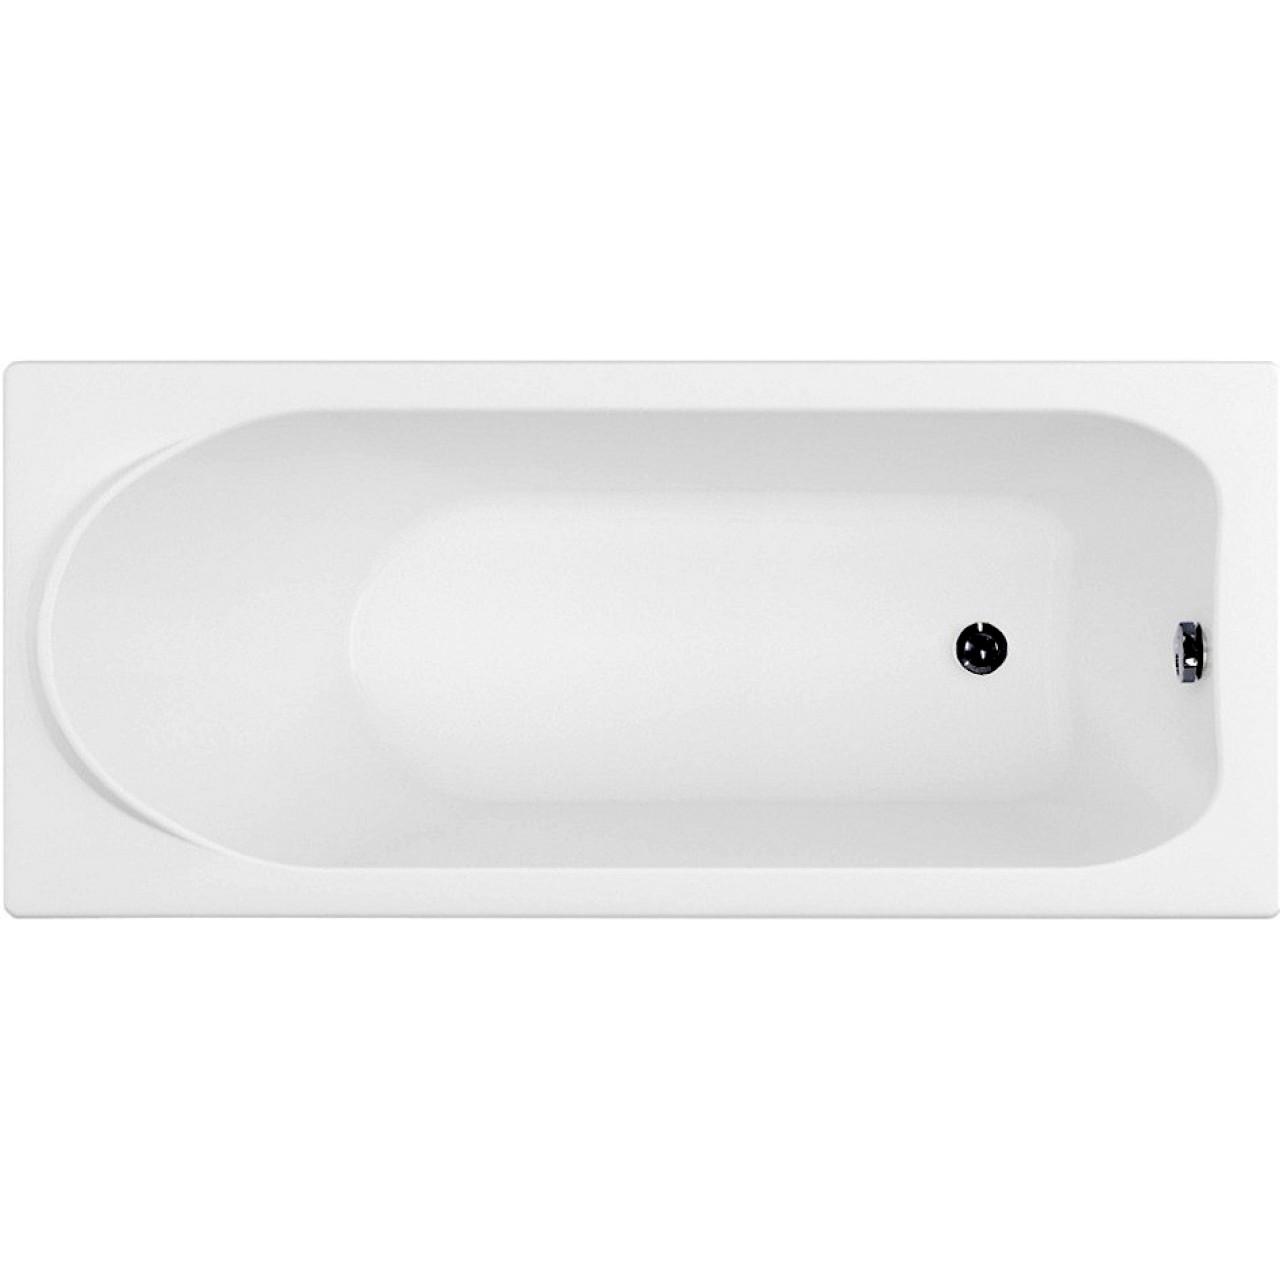 Акриловая ванна Francesca Avanti SOLO 170x70 с экранами и каркасом купить в Москве по цене от 34430р. в интернет-магазине mebel-v-vannu.ru